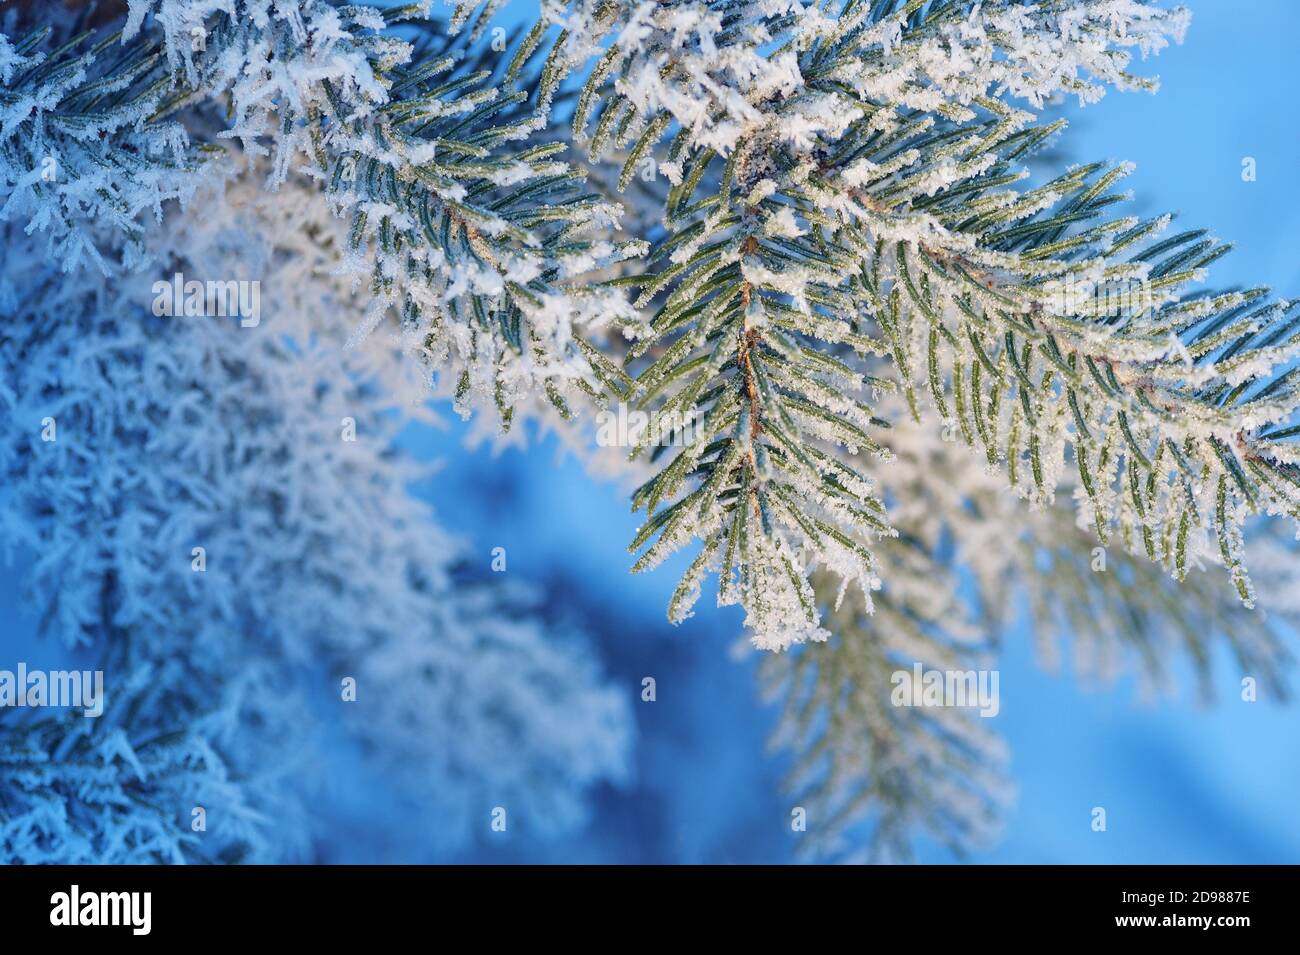 Weihnachten immergrüne Fichte schneebedeckten Baum mit frischem Schnee auf blauem Ton, Winter Hintergrund Stockfoto